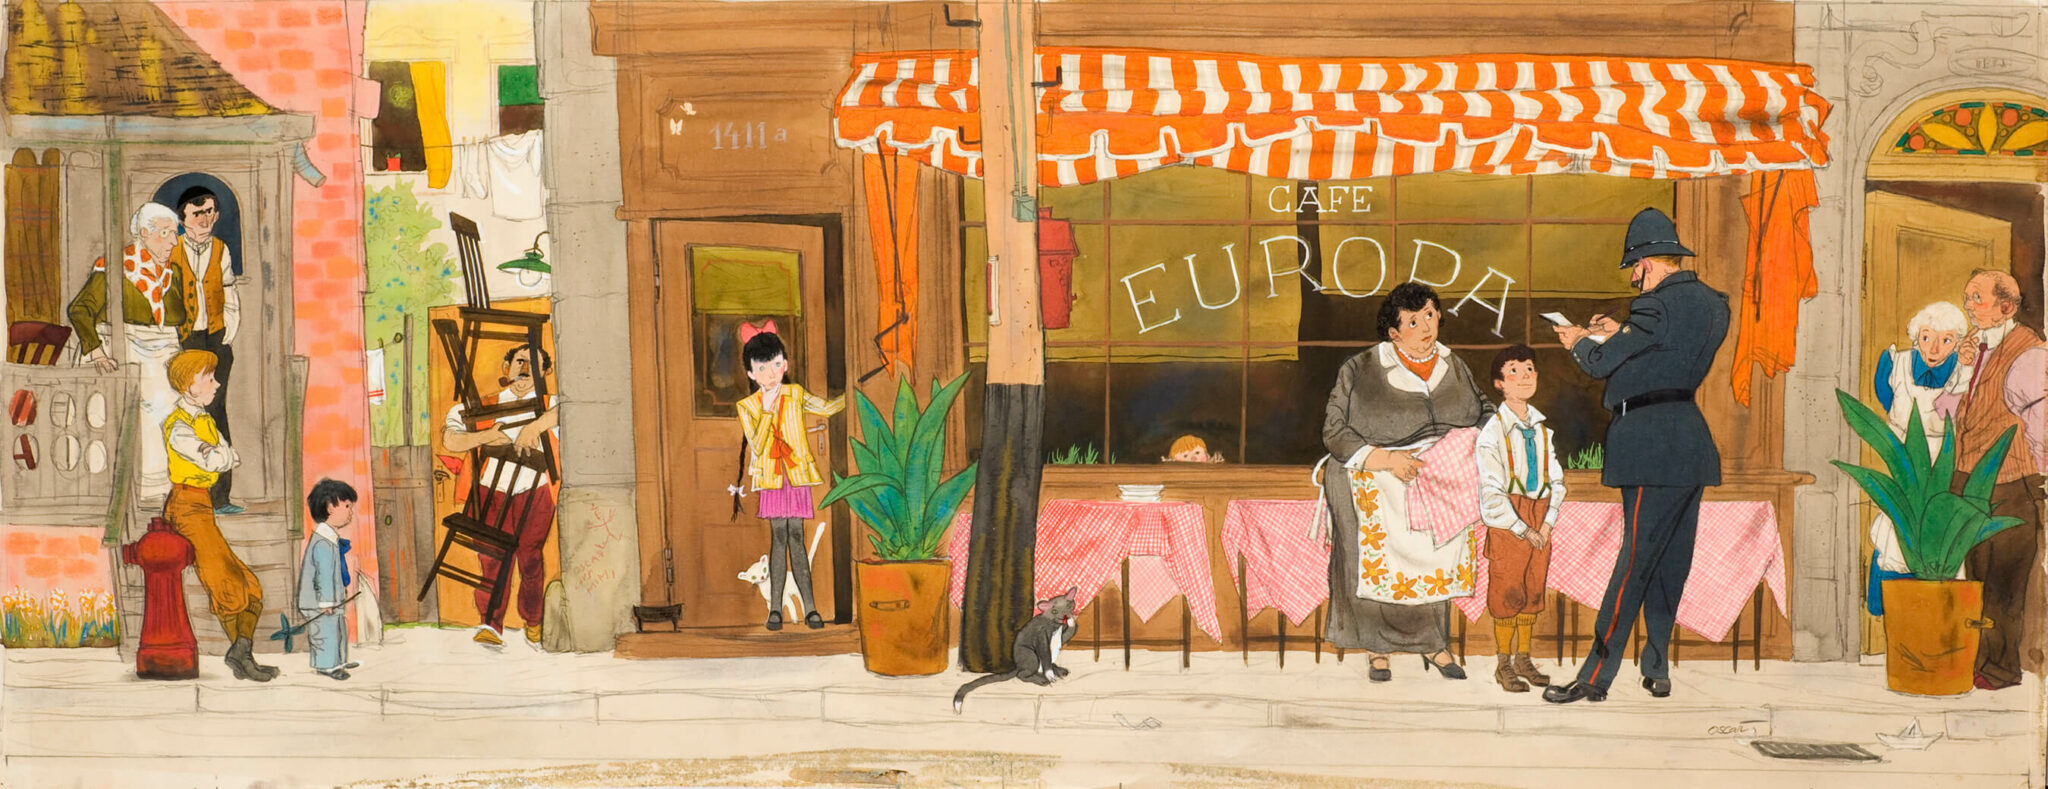 Oscar Cahén, Illustration for “The First (And Last) Ottawa Street Café”, 1950